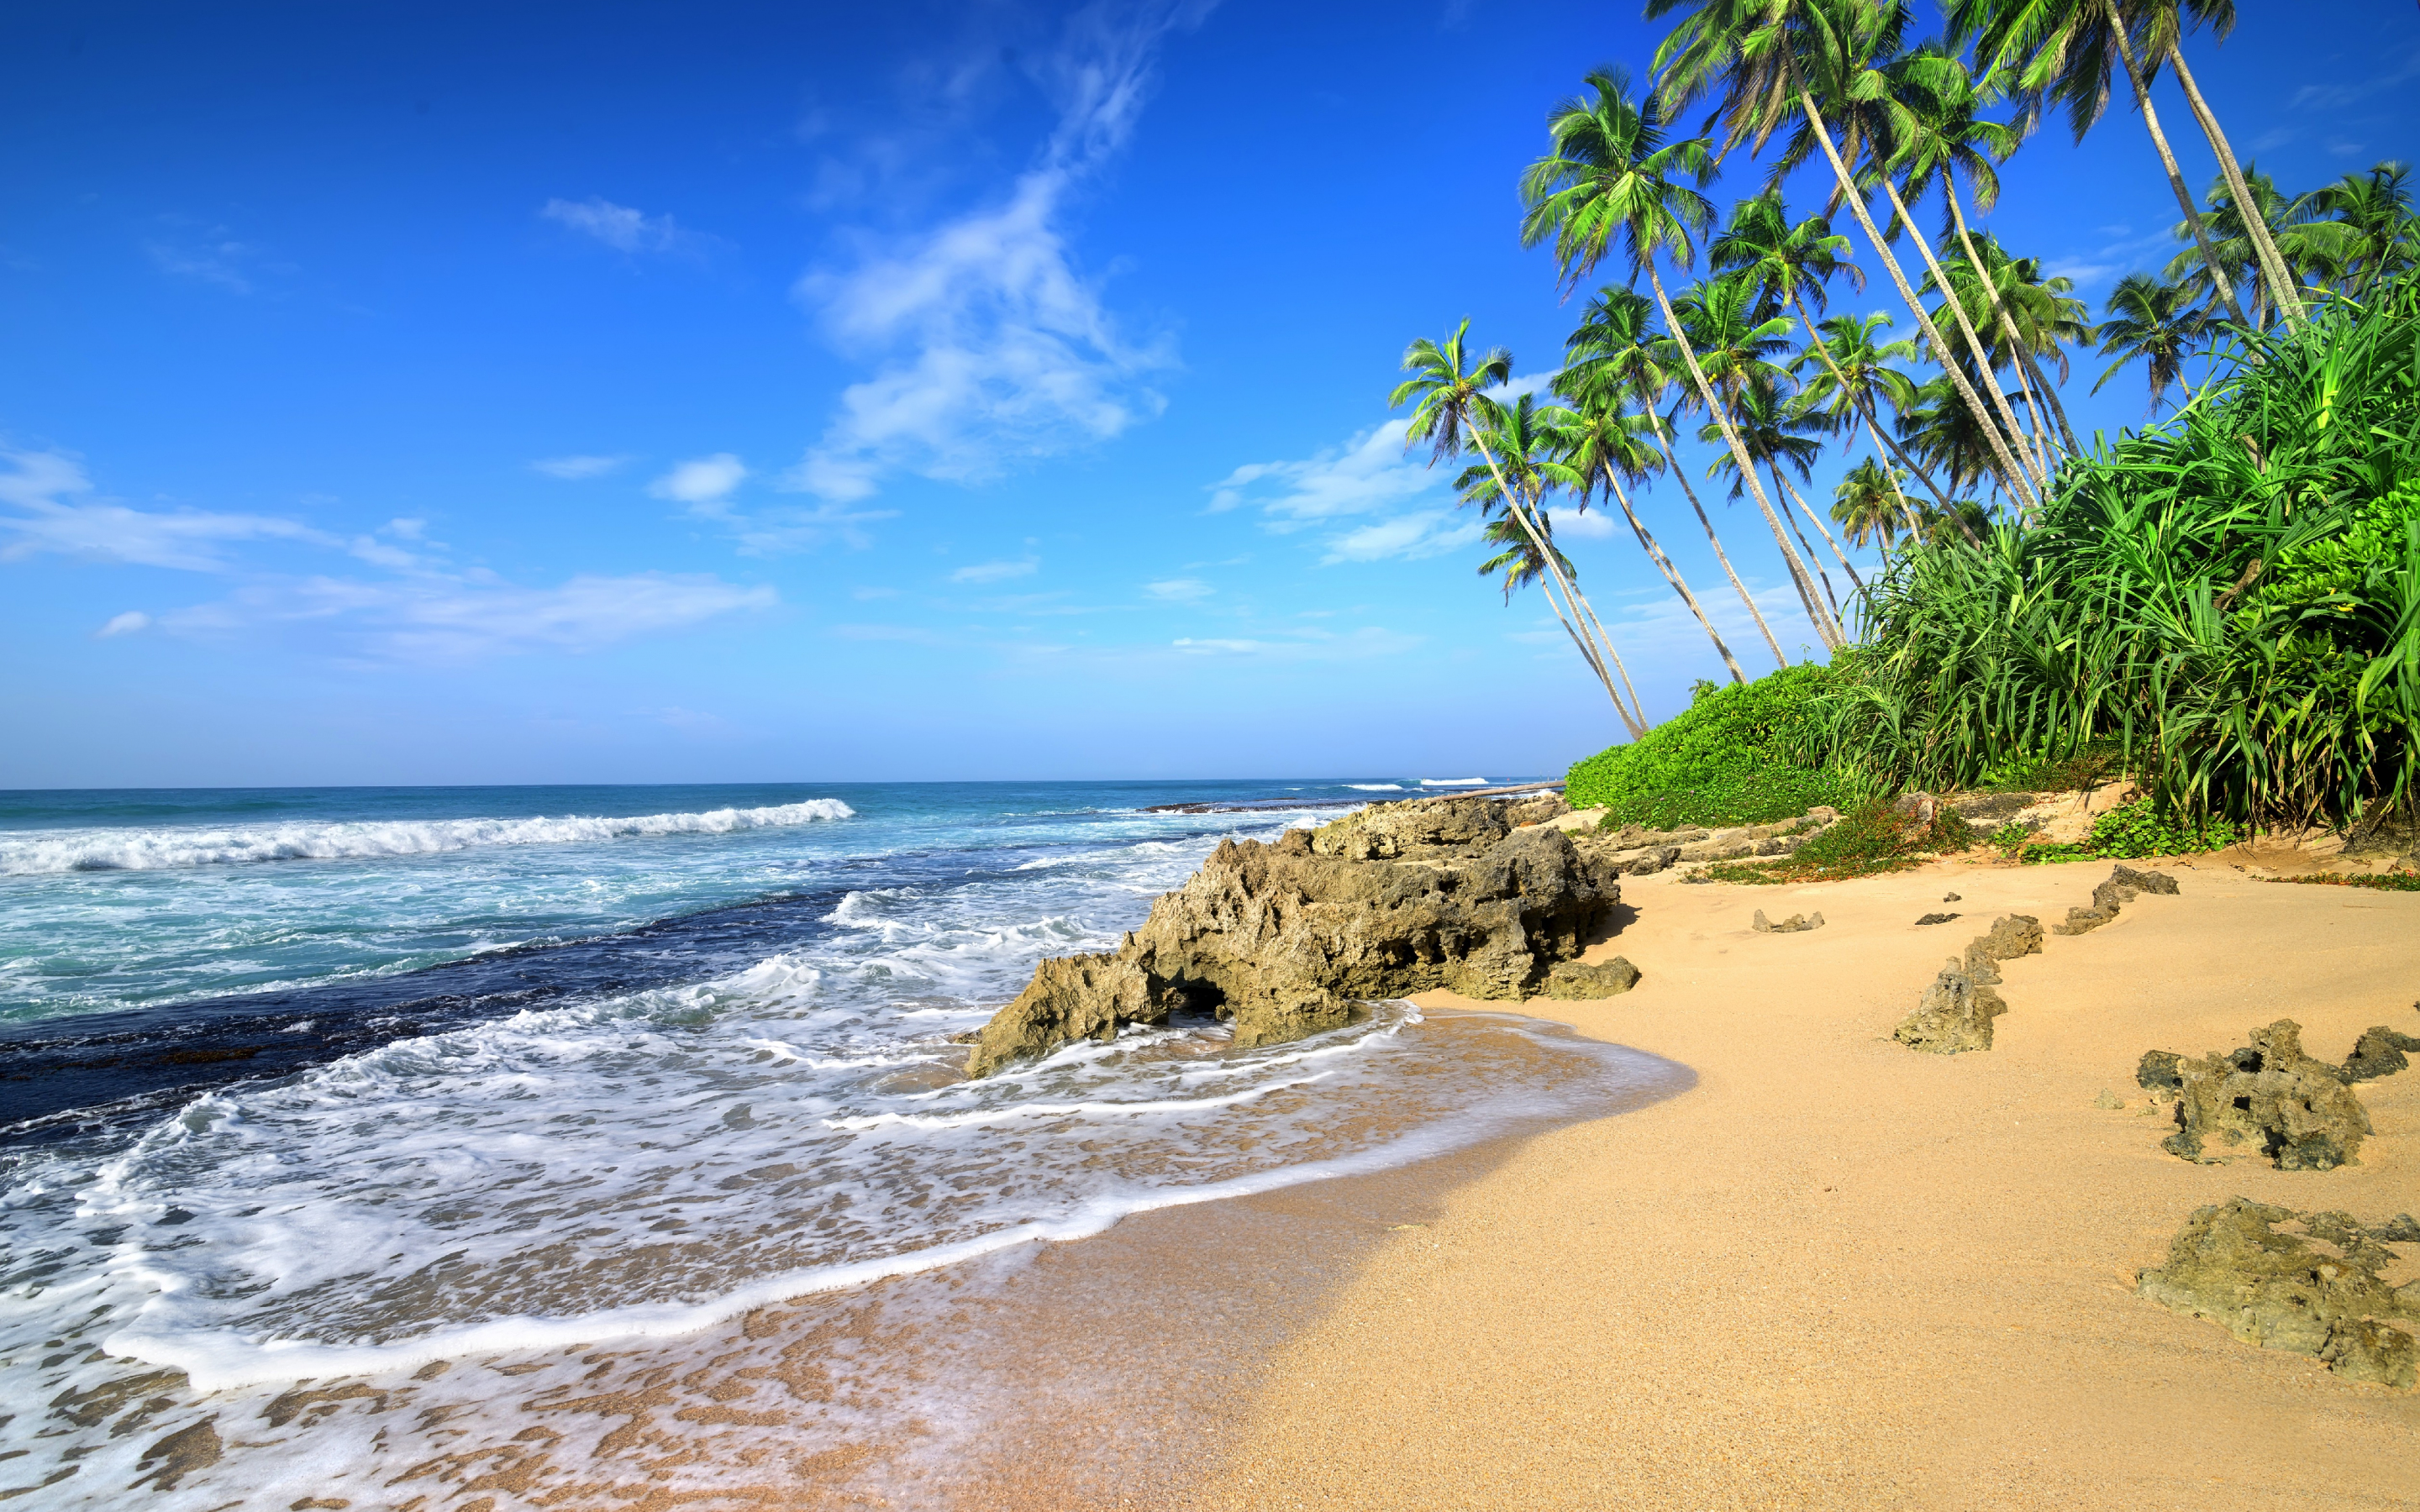 Beach, sea waves, tropical beach, palm tree, 2880x1800 wallpaper